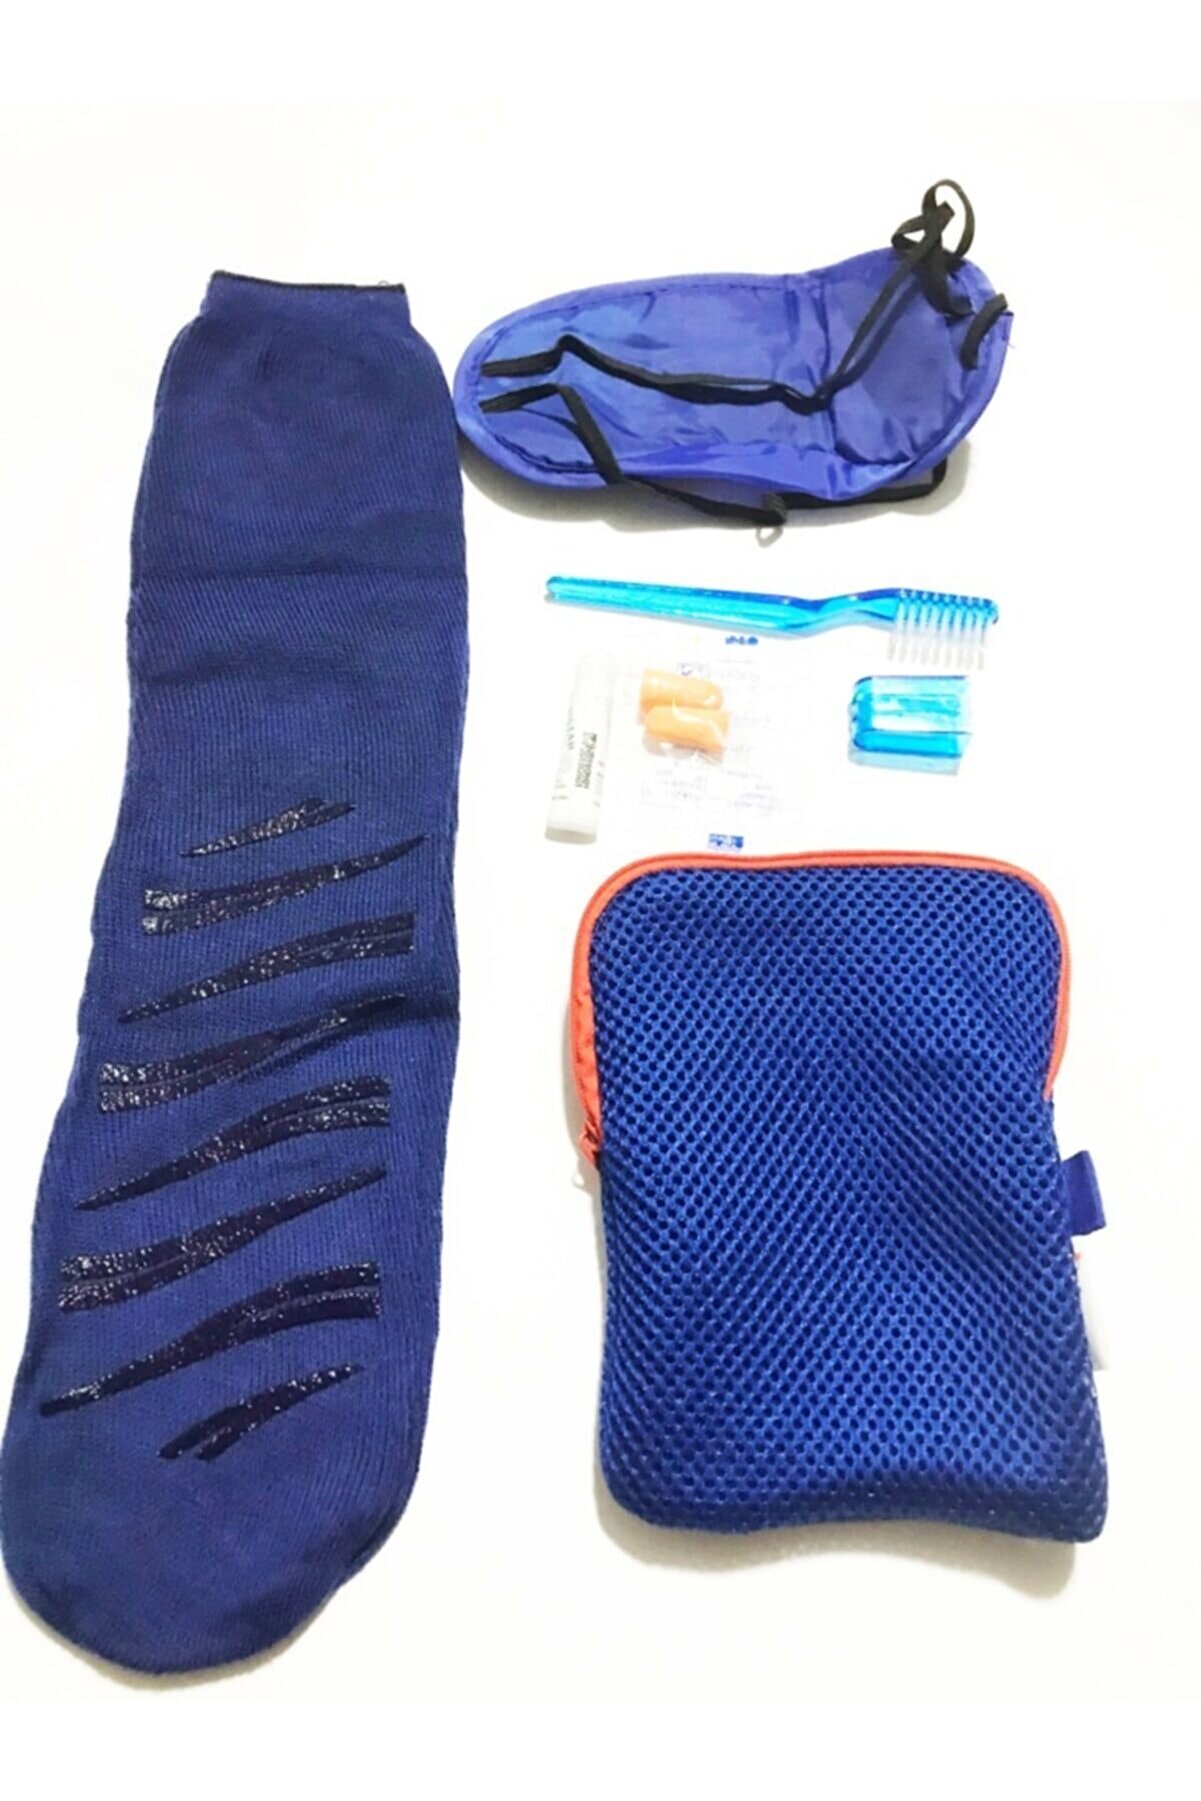 Mahi Max Mavi Çanta Içi Dolu Set 16x12 Cm & Seyahat Seti - Uyku Çorabı Uyku Bandı Diş Fırçası Ve Macunu